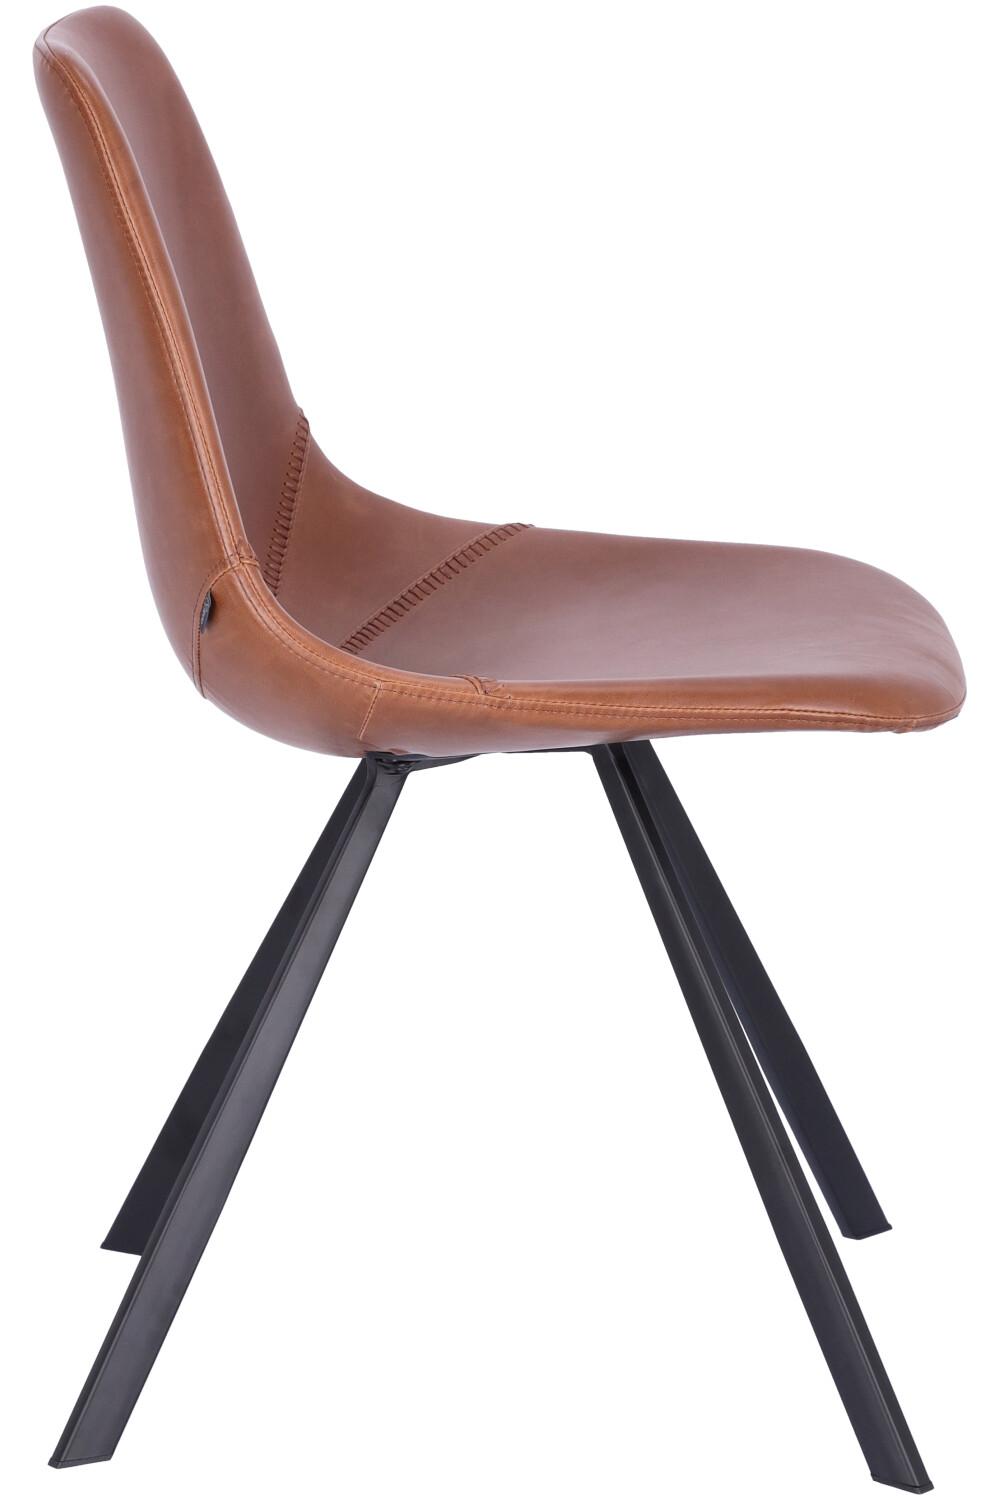 Abbildung chair Tembo Seitenansicht